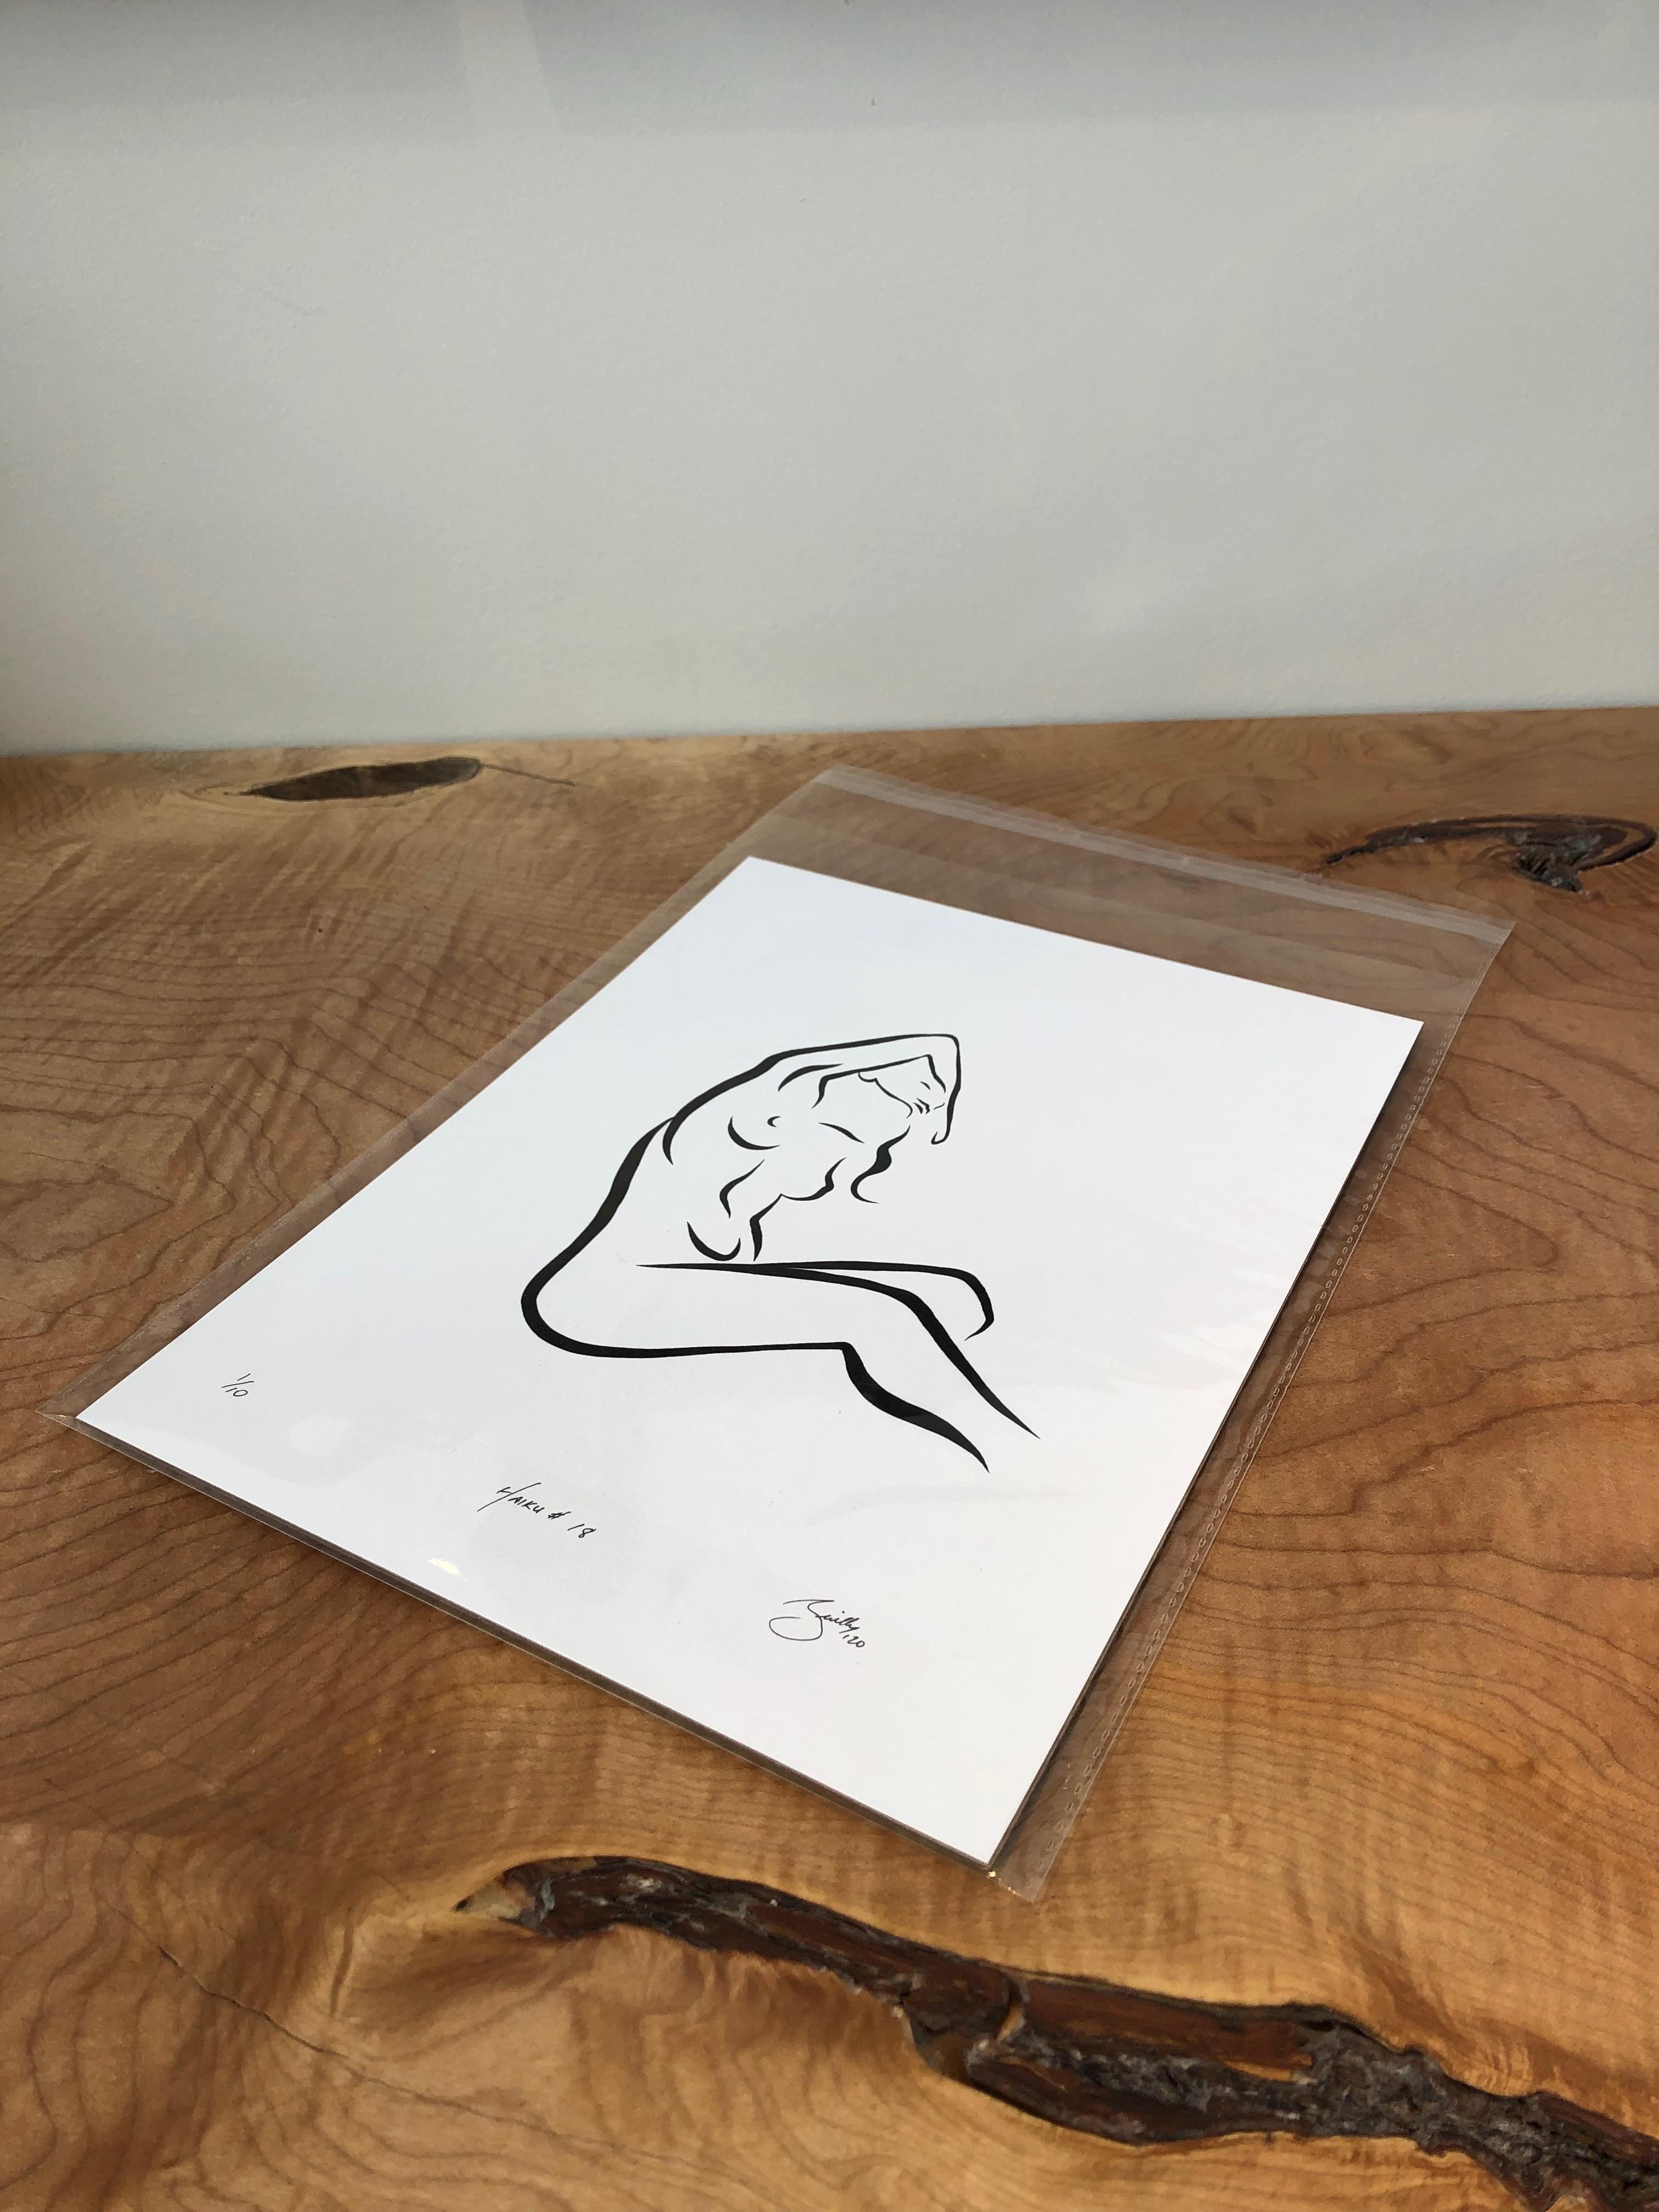 Haiku #18 - Digital Vector Drawing Seated Female Nude Woman Figure Arm Raised - Print by Michael Binkley